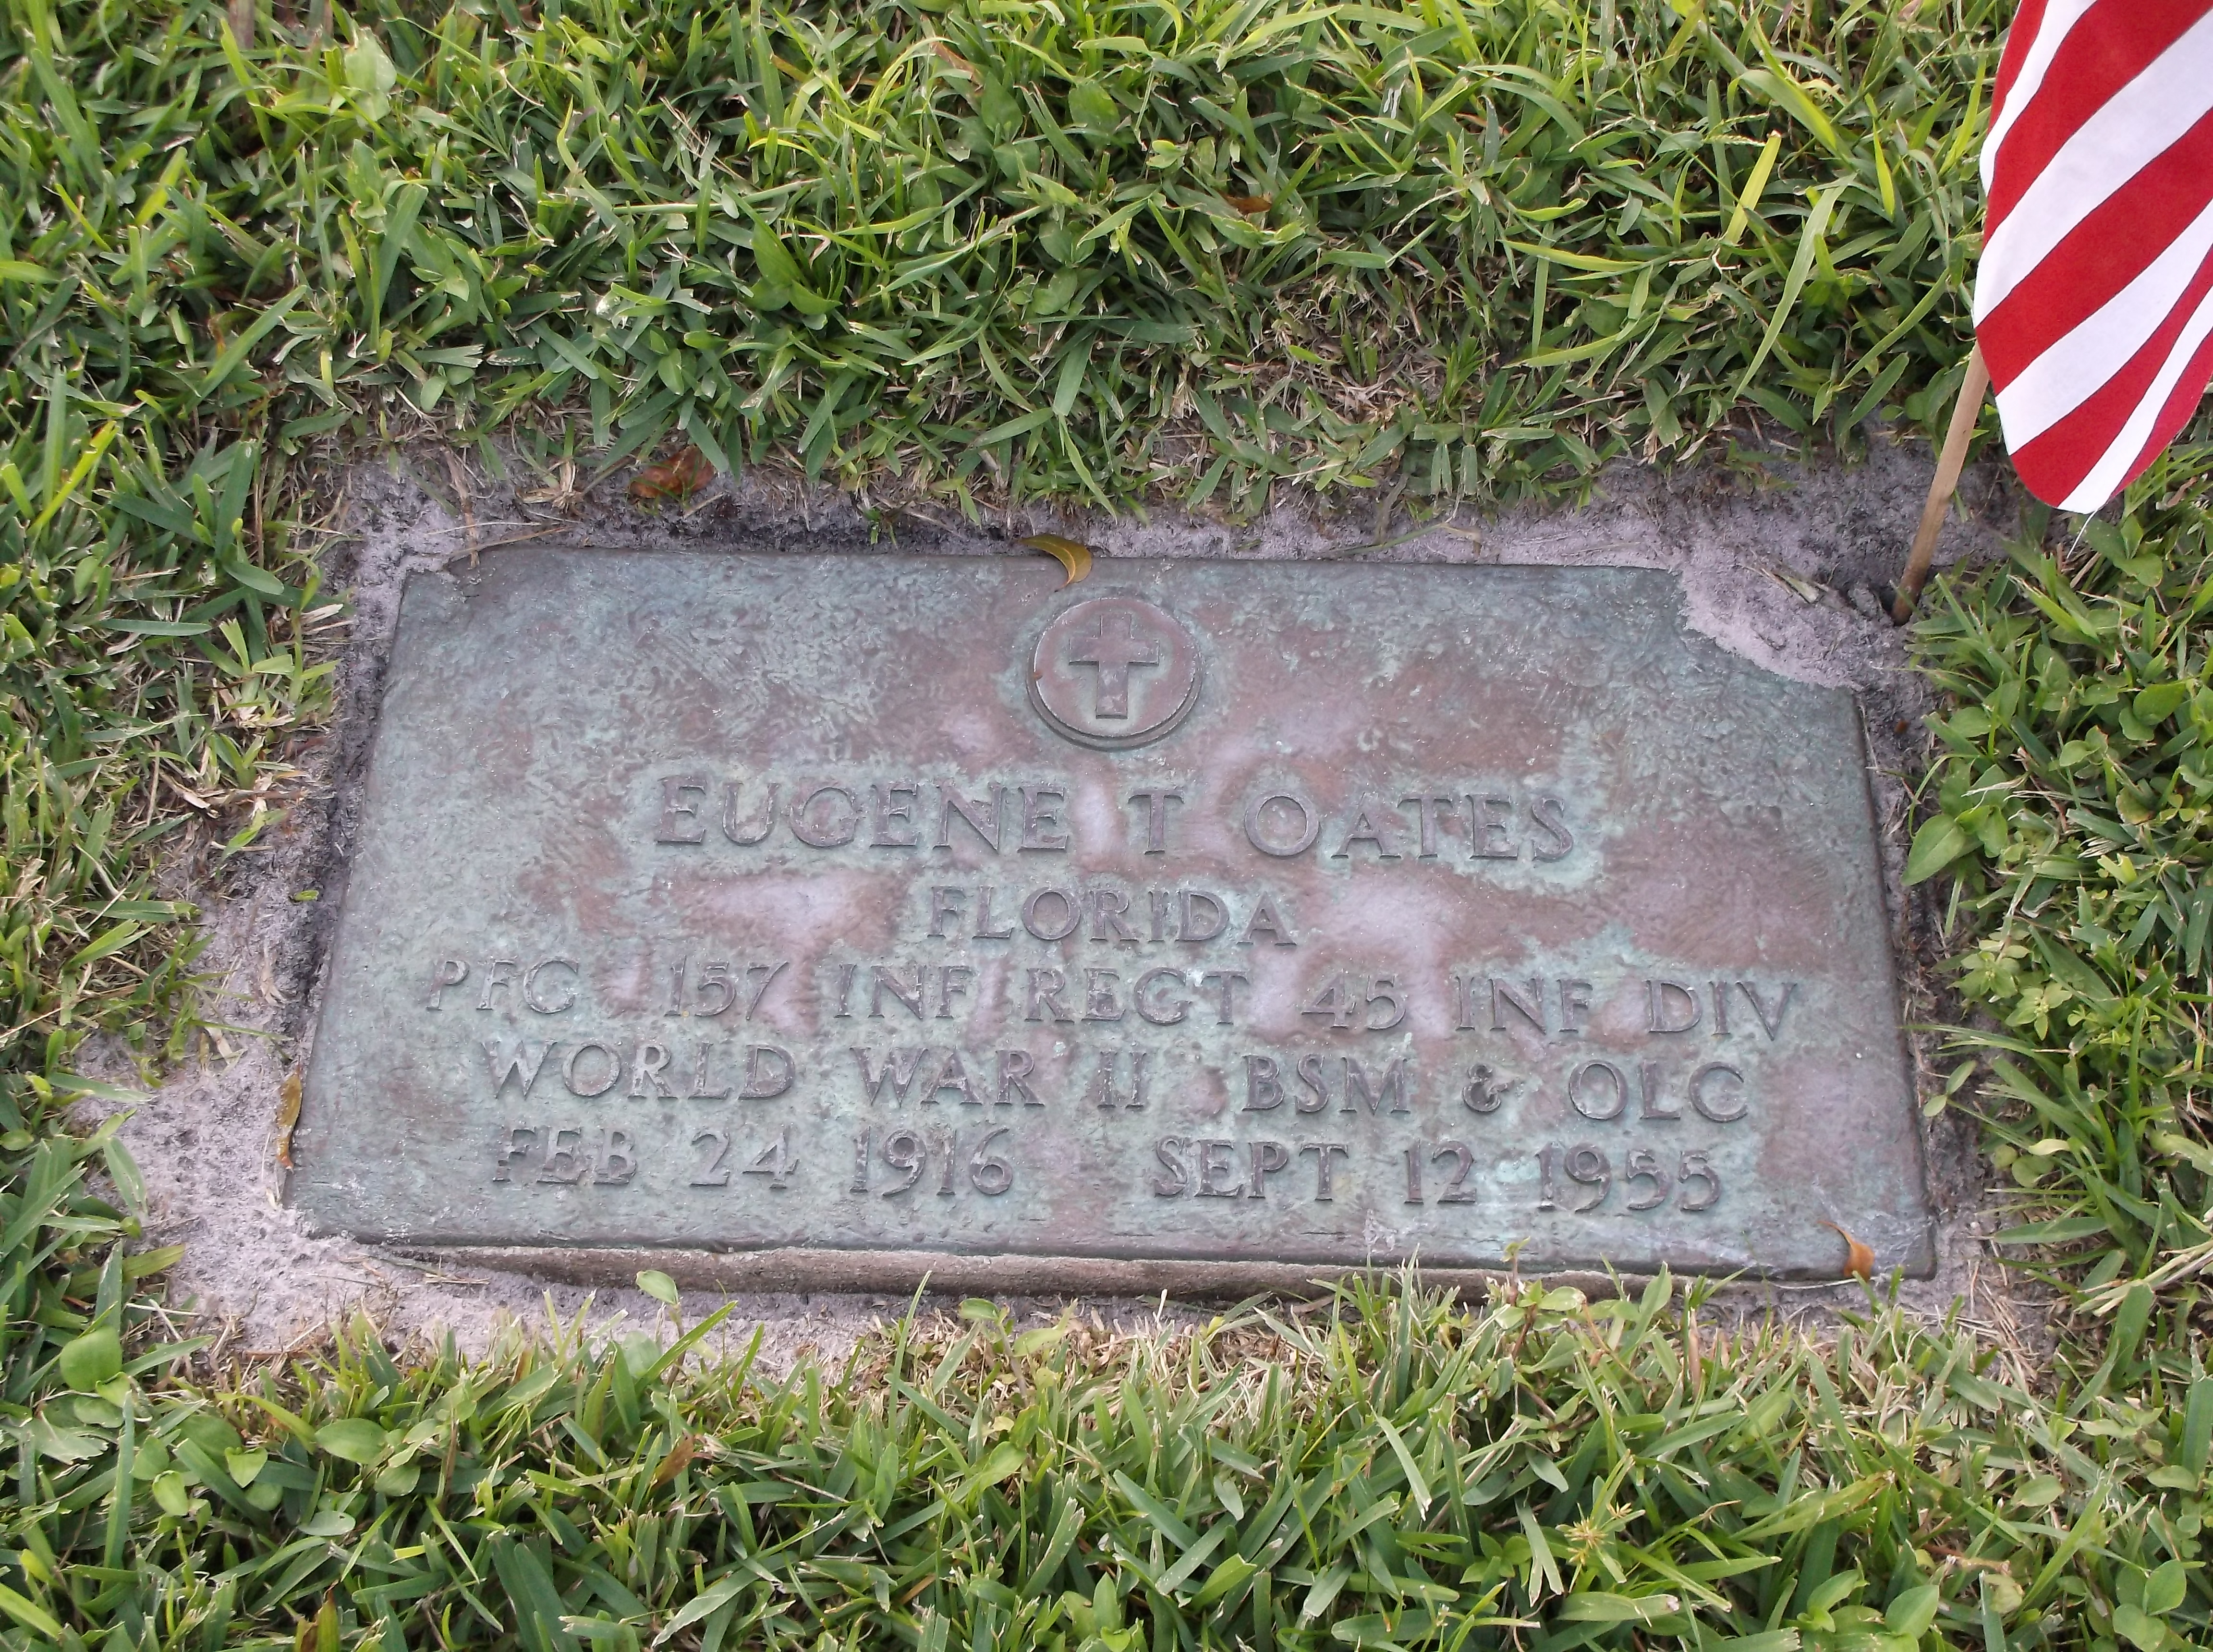 Eugene T Oates